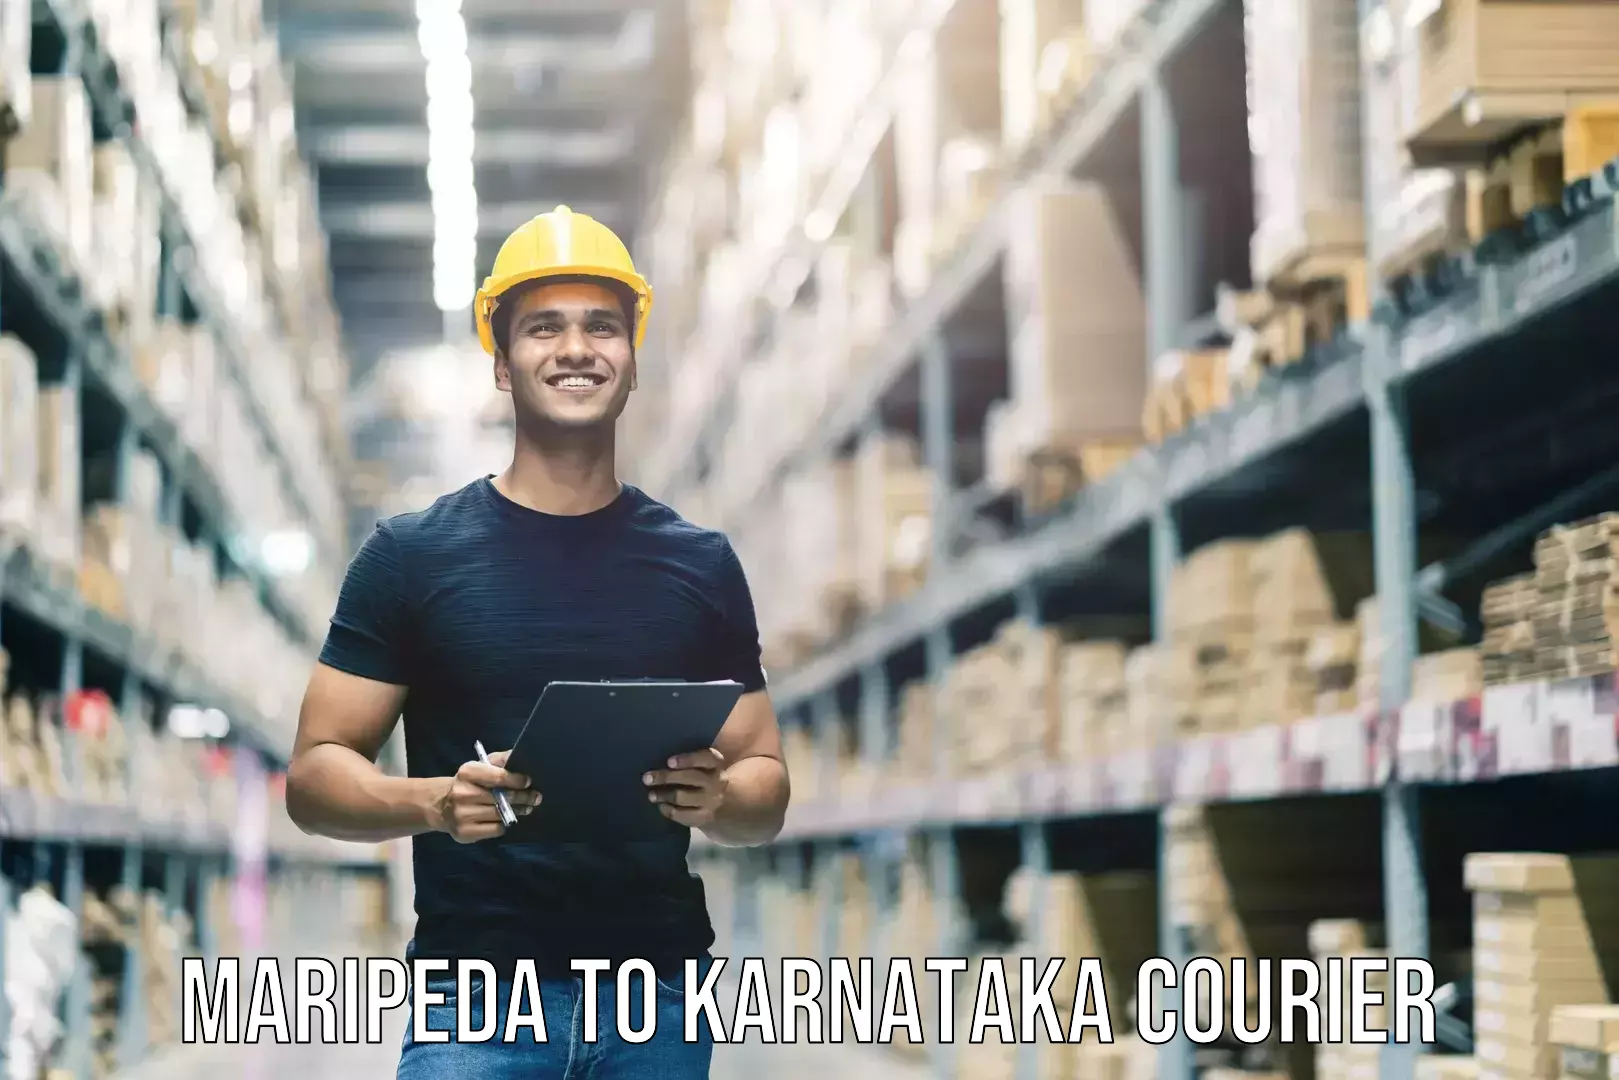 Door-to-door baggage service Maripeda to Karnataka